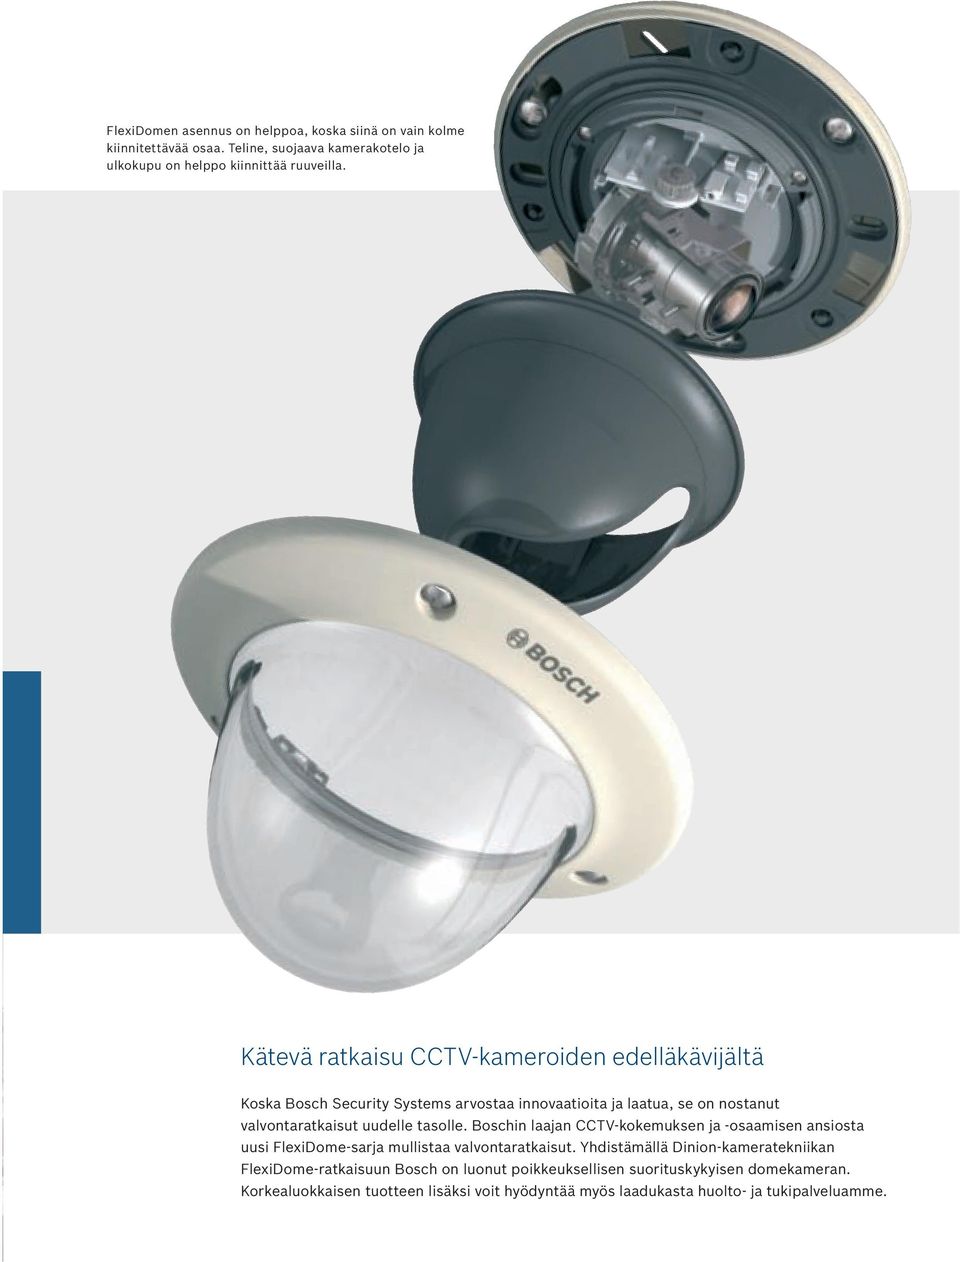 tasolle. Boschin laajan CCTV-kokemuksen ja -osaamisen ansiosta uusi FlexiDome-sarja mullistaa valvontaratkaisut.